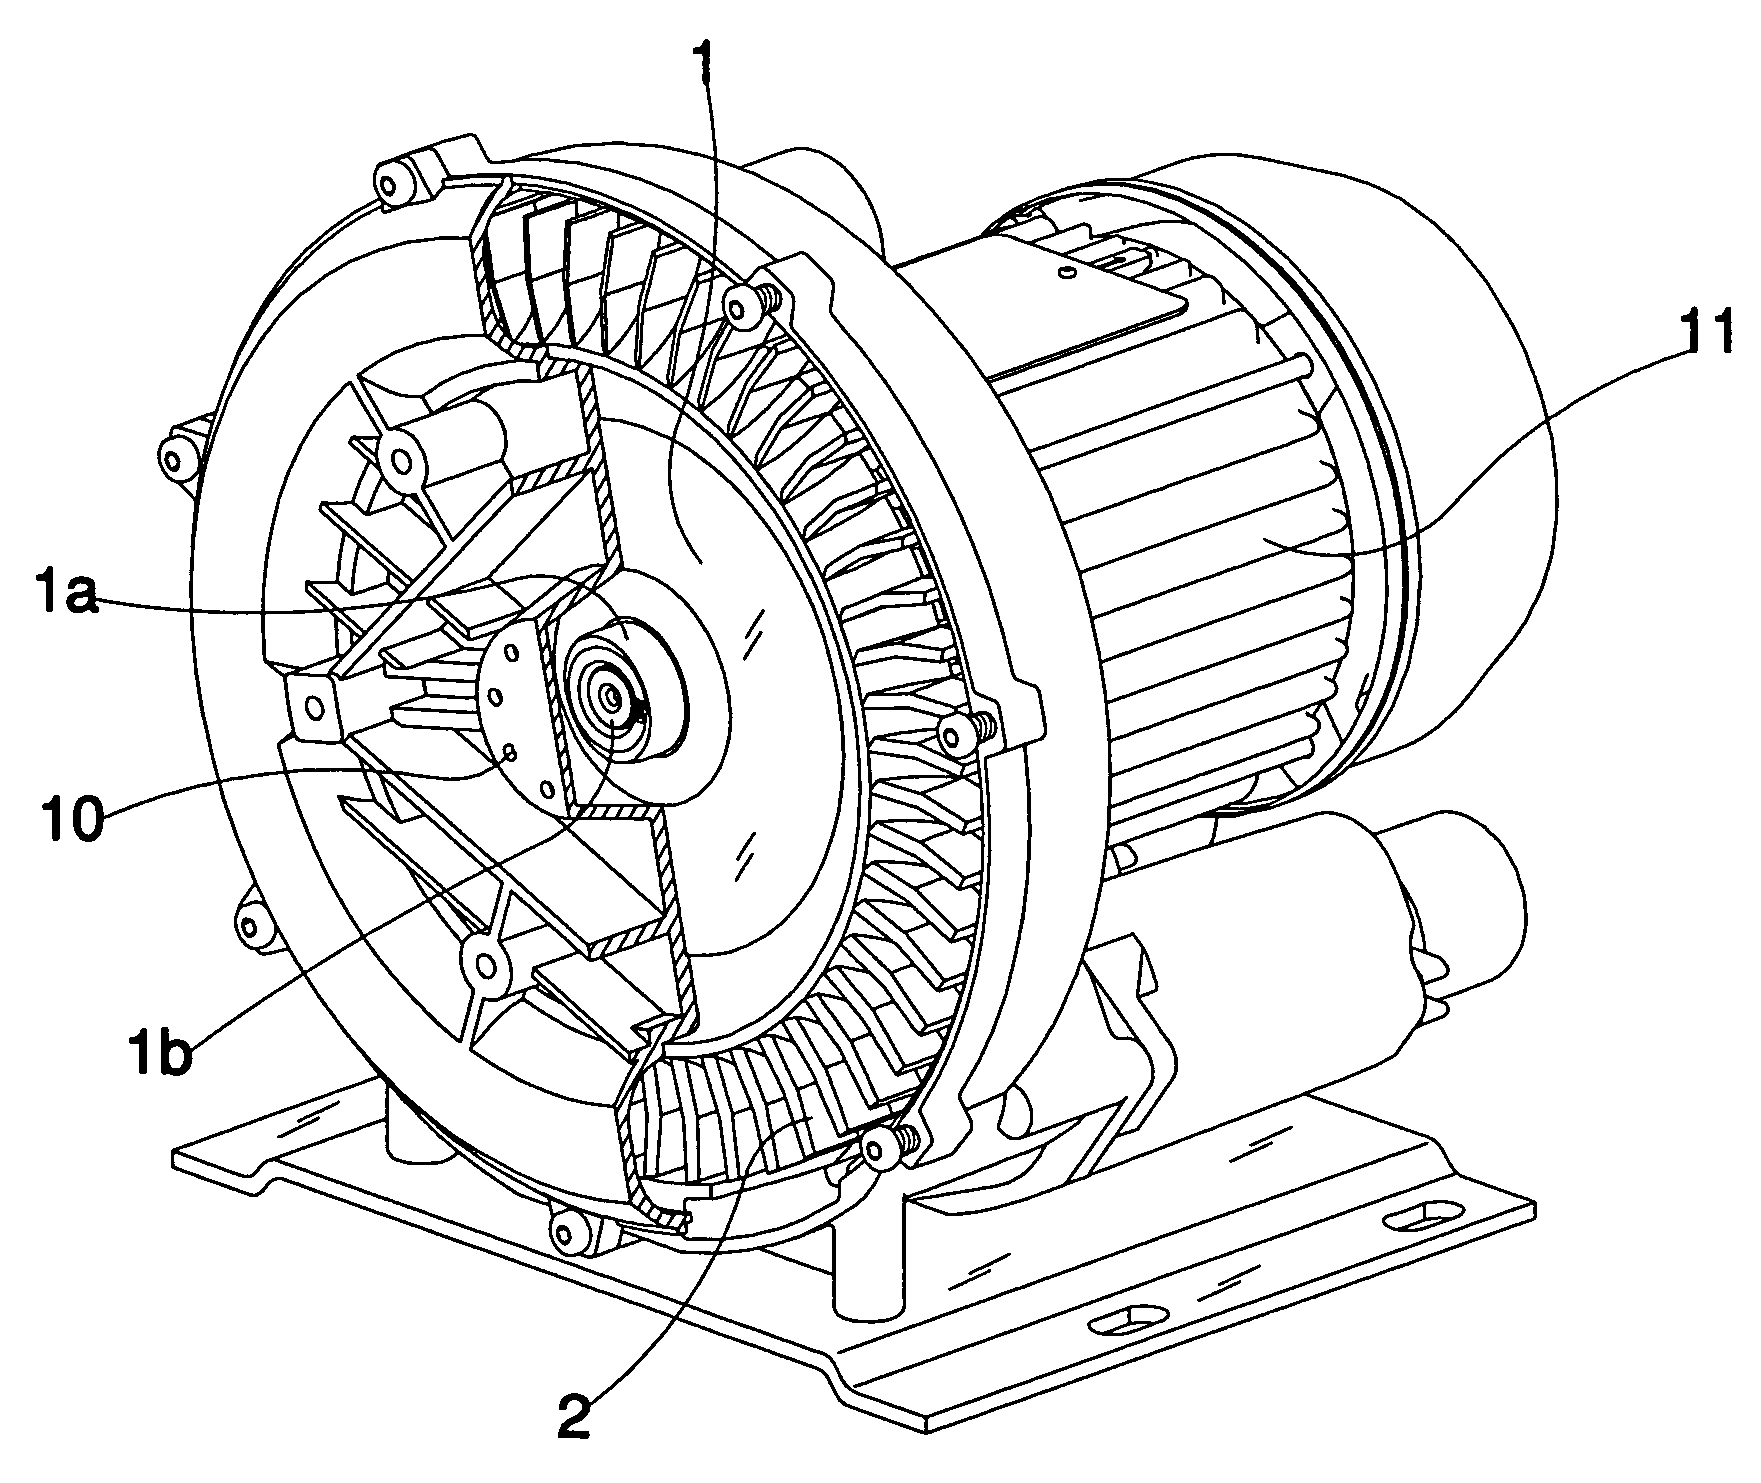 Rotary vacuum blower